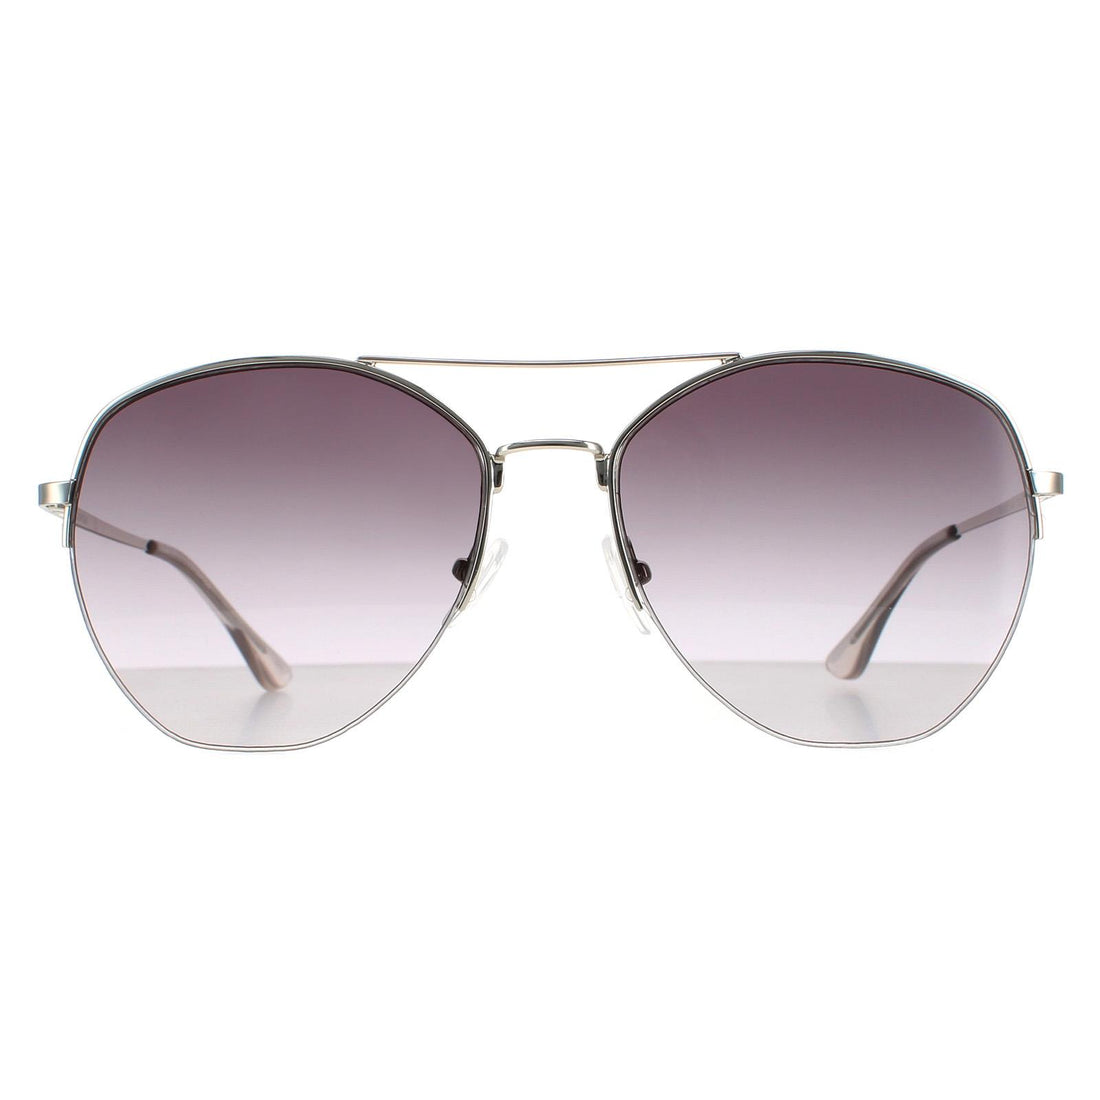 Calvin Klein CK20121S Sunglasses Silver / Smoke Grey